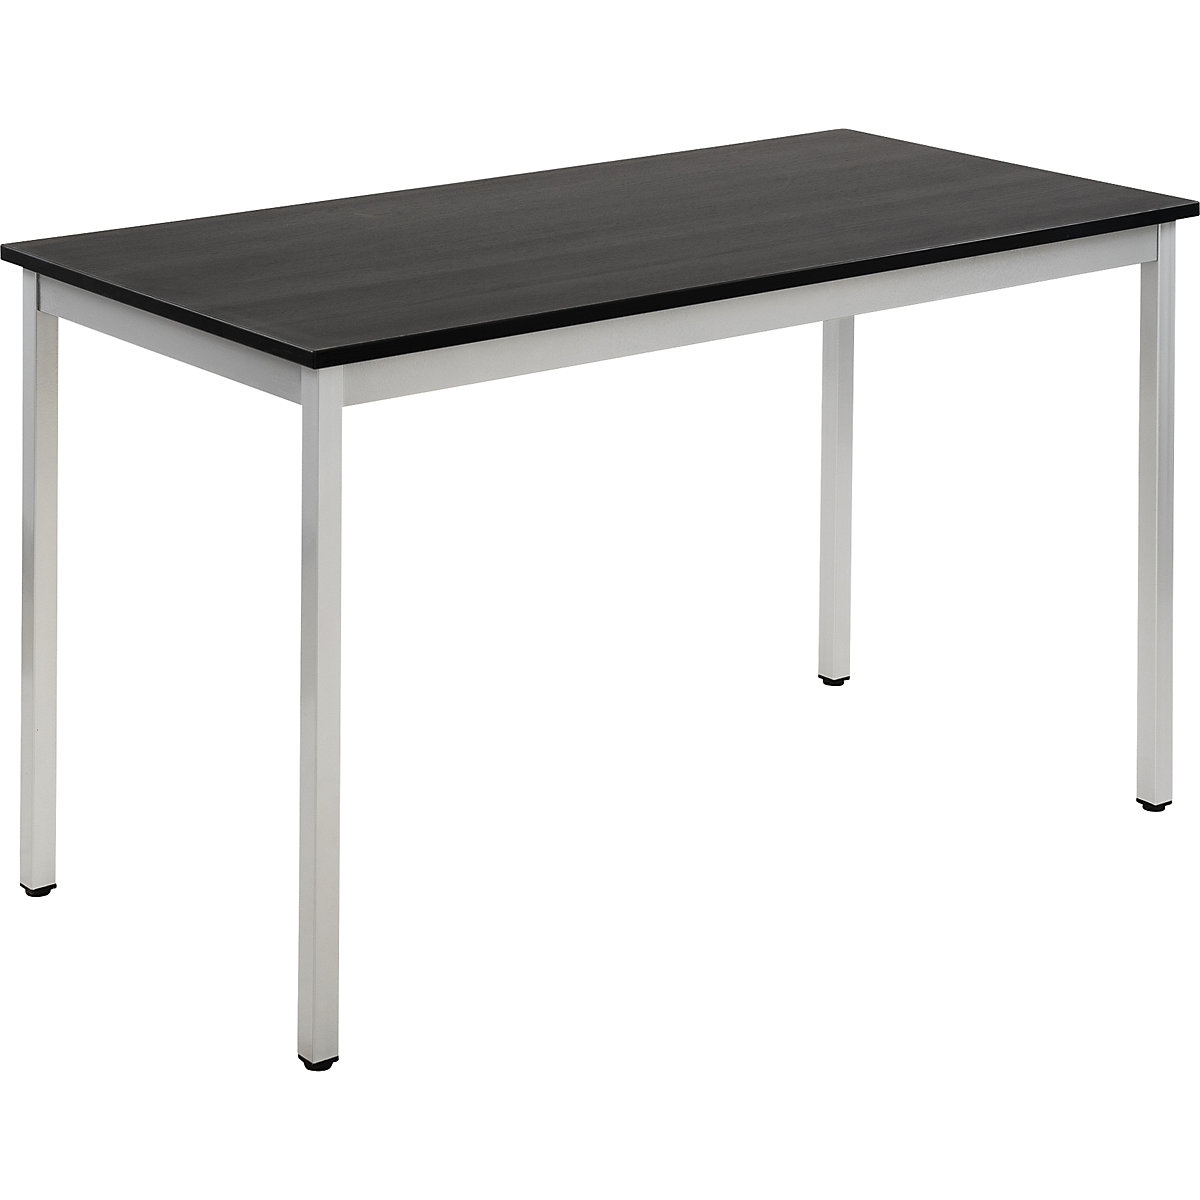 Višenamjenski stol – eurokraft basic, pravokutna izvedba, ŠxV 1200 x 740 mm, dubina 600 mm, ploča u imitaciji jasena u tamnosivoj boji, postolje u aluminij bijeloj boji-16